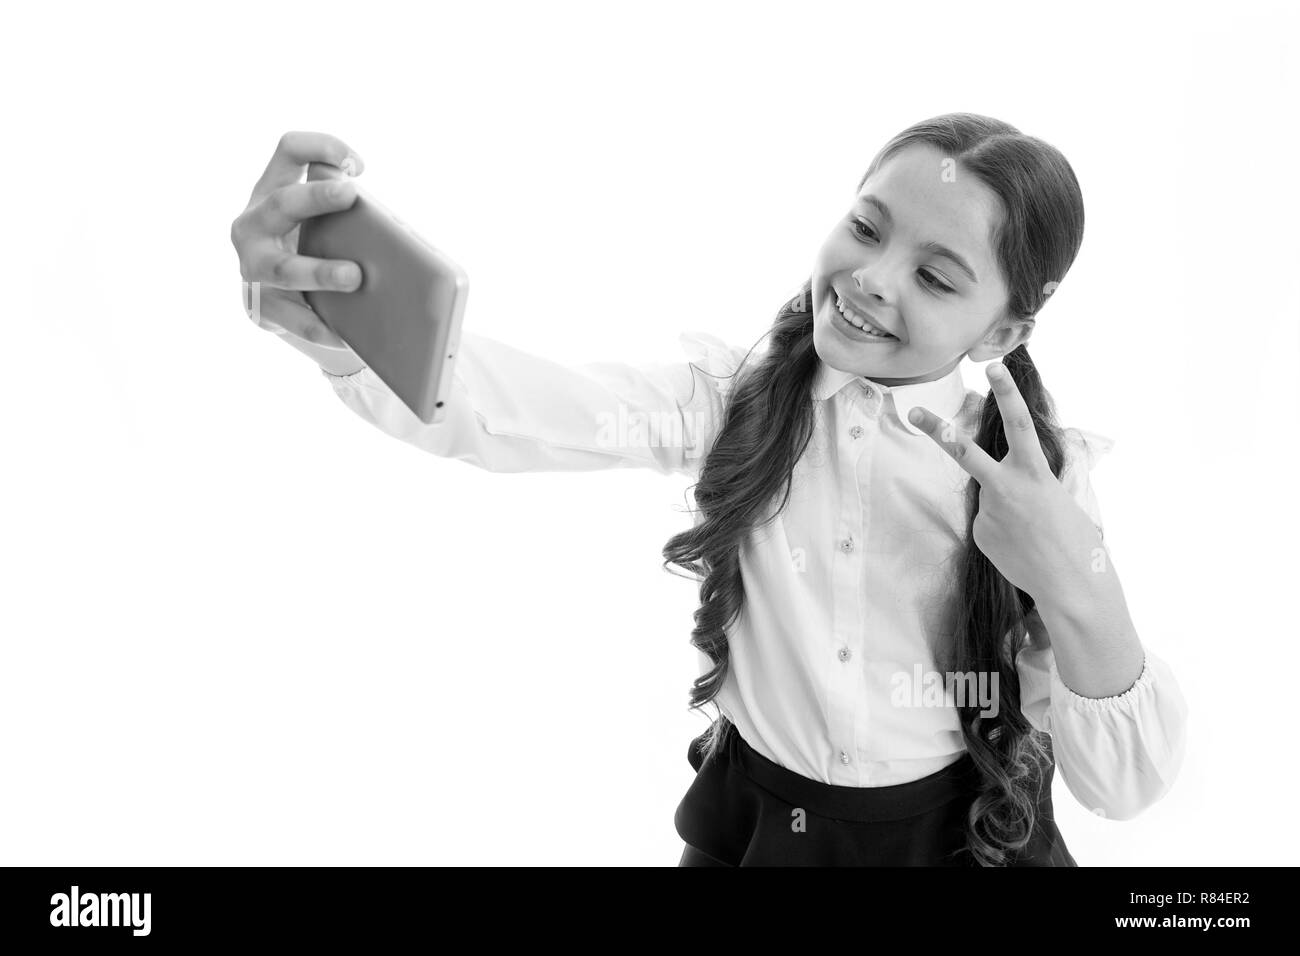 Junge vlogger Stream online. Kind Schuluniform smart Kid glückliches Gesicht. Mädchen niedliche langes lockiges Haar hält Smartphone unter selfie weißen Hintergrund. Kind Mädchen Schule einheitliche Kleidung hält Smartphone. Stockfoto